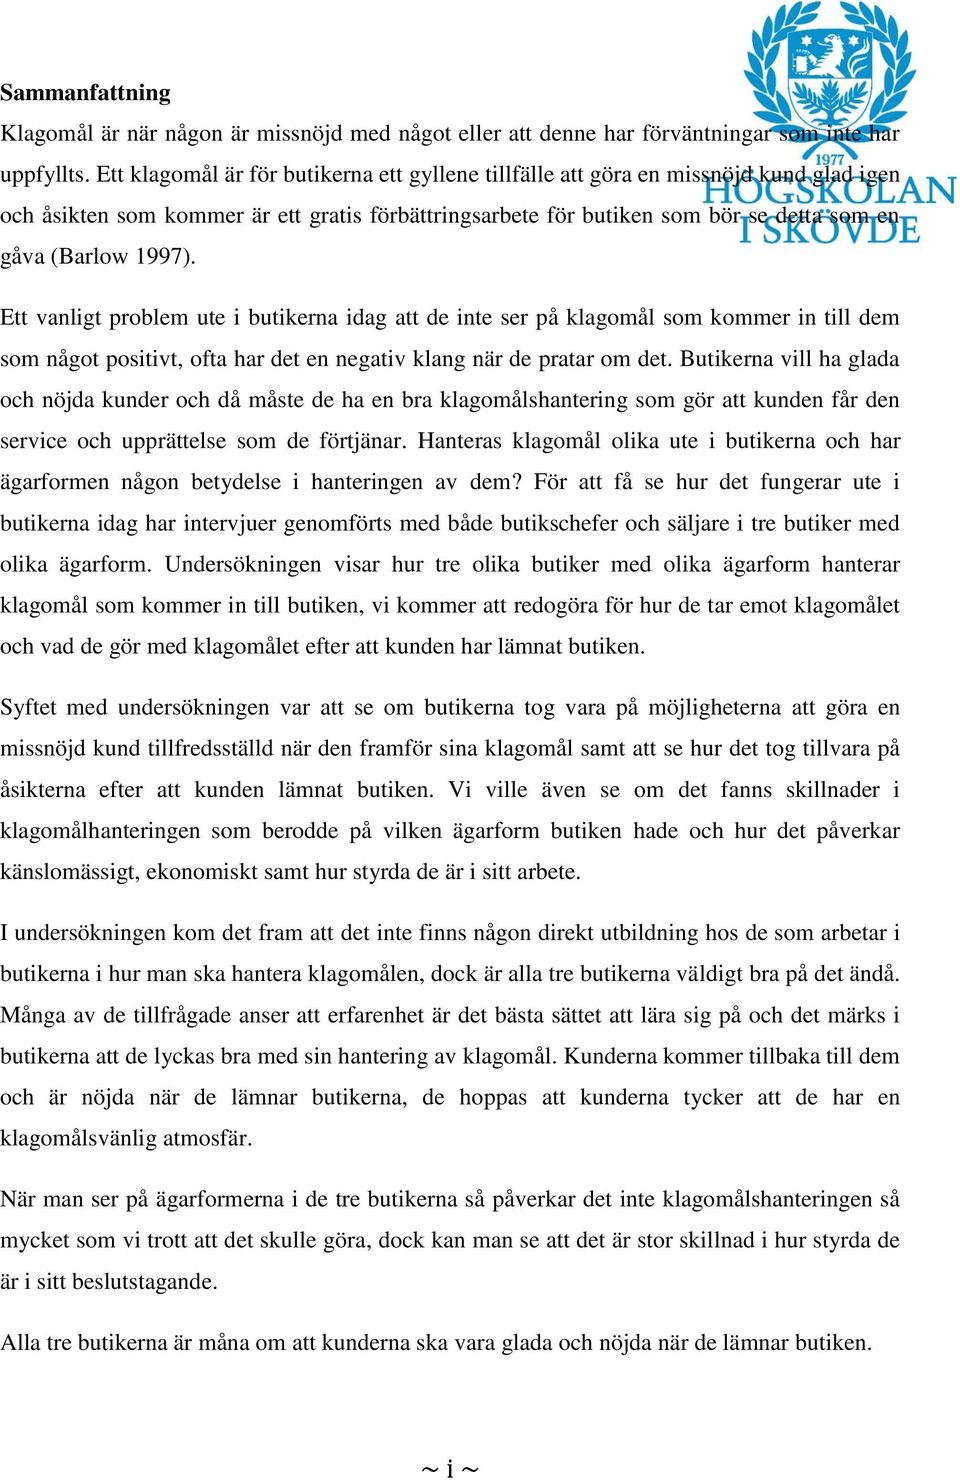 KLAGOMÅLSHANTERING I BUTIK SETT UTIFRÅN OLIKA ÄGARFORMER - PDF ...